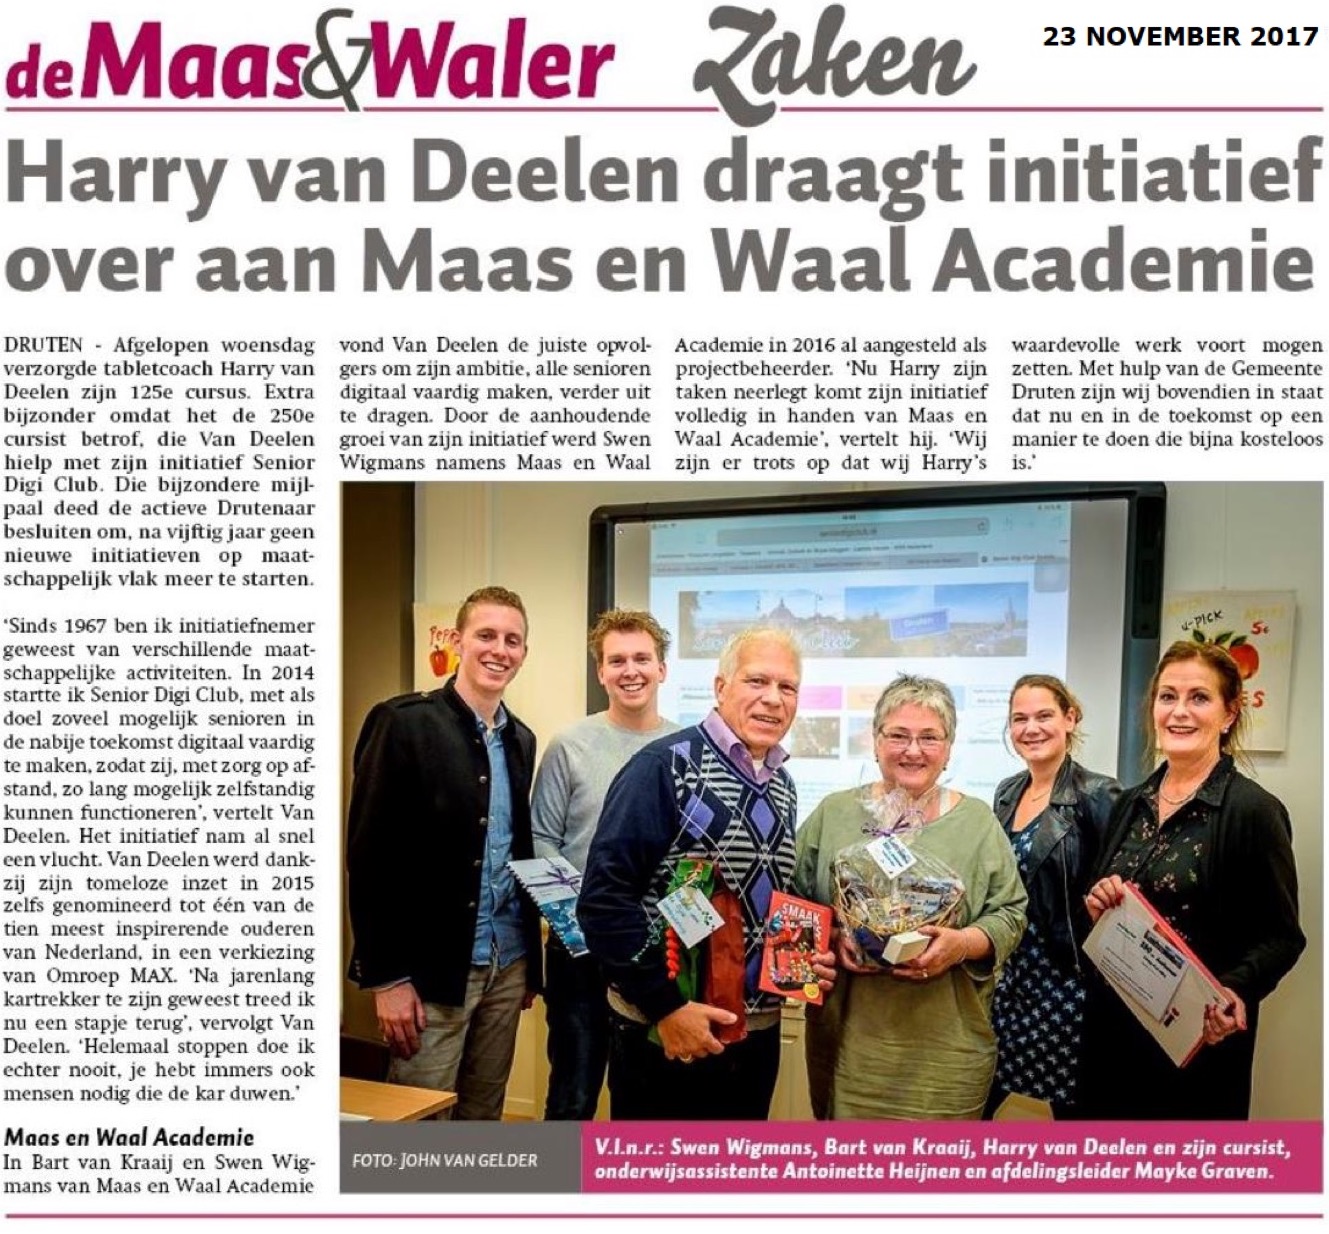 Harry van Deelen draagt initiatief over aan Maas en Waal Academie